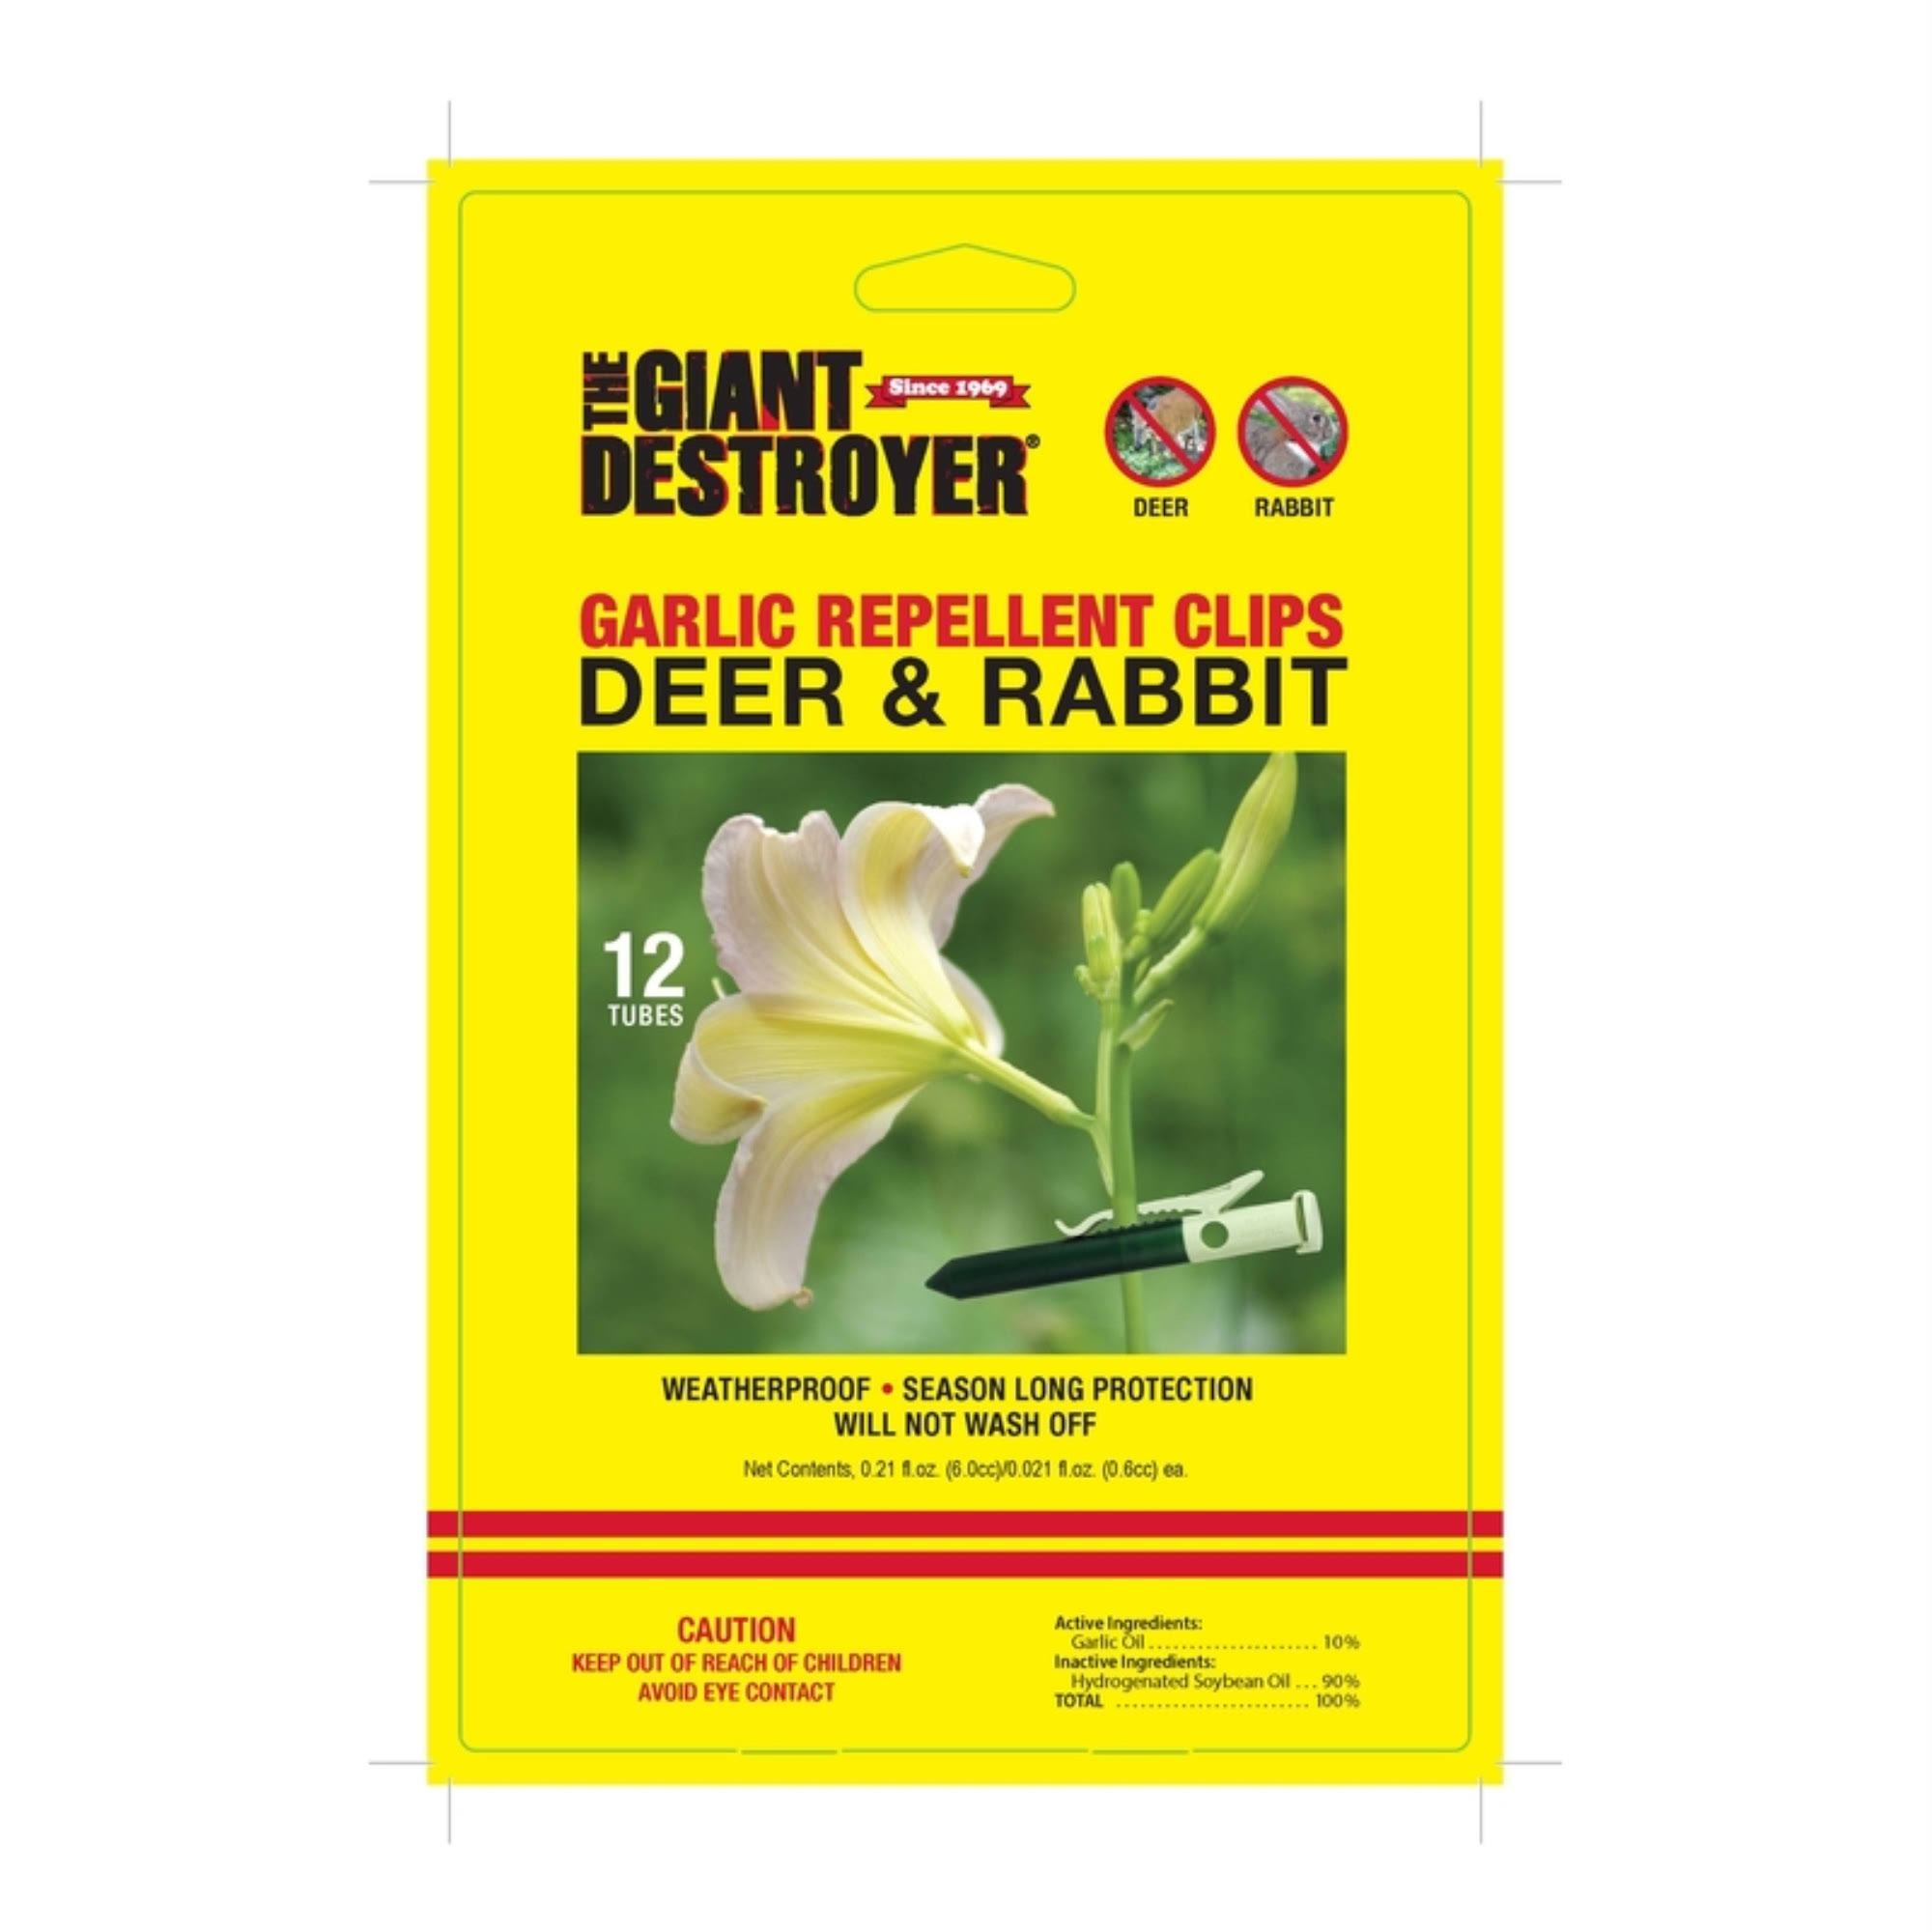 The Giant Destroyer 00700 CLPS Deer Rabbit Repellent